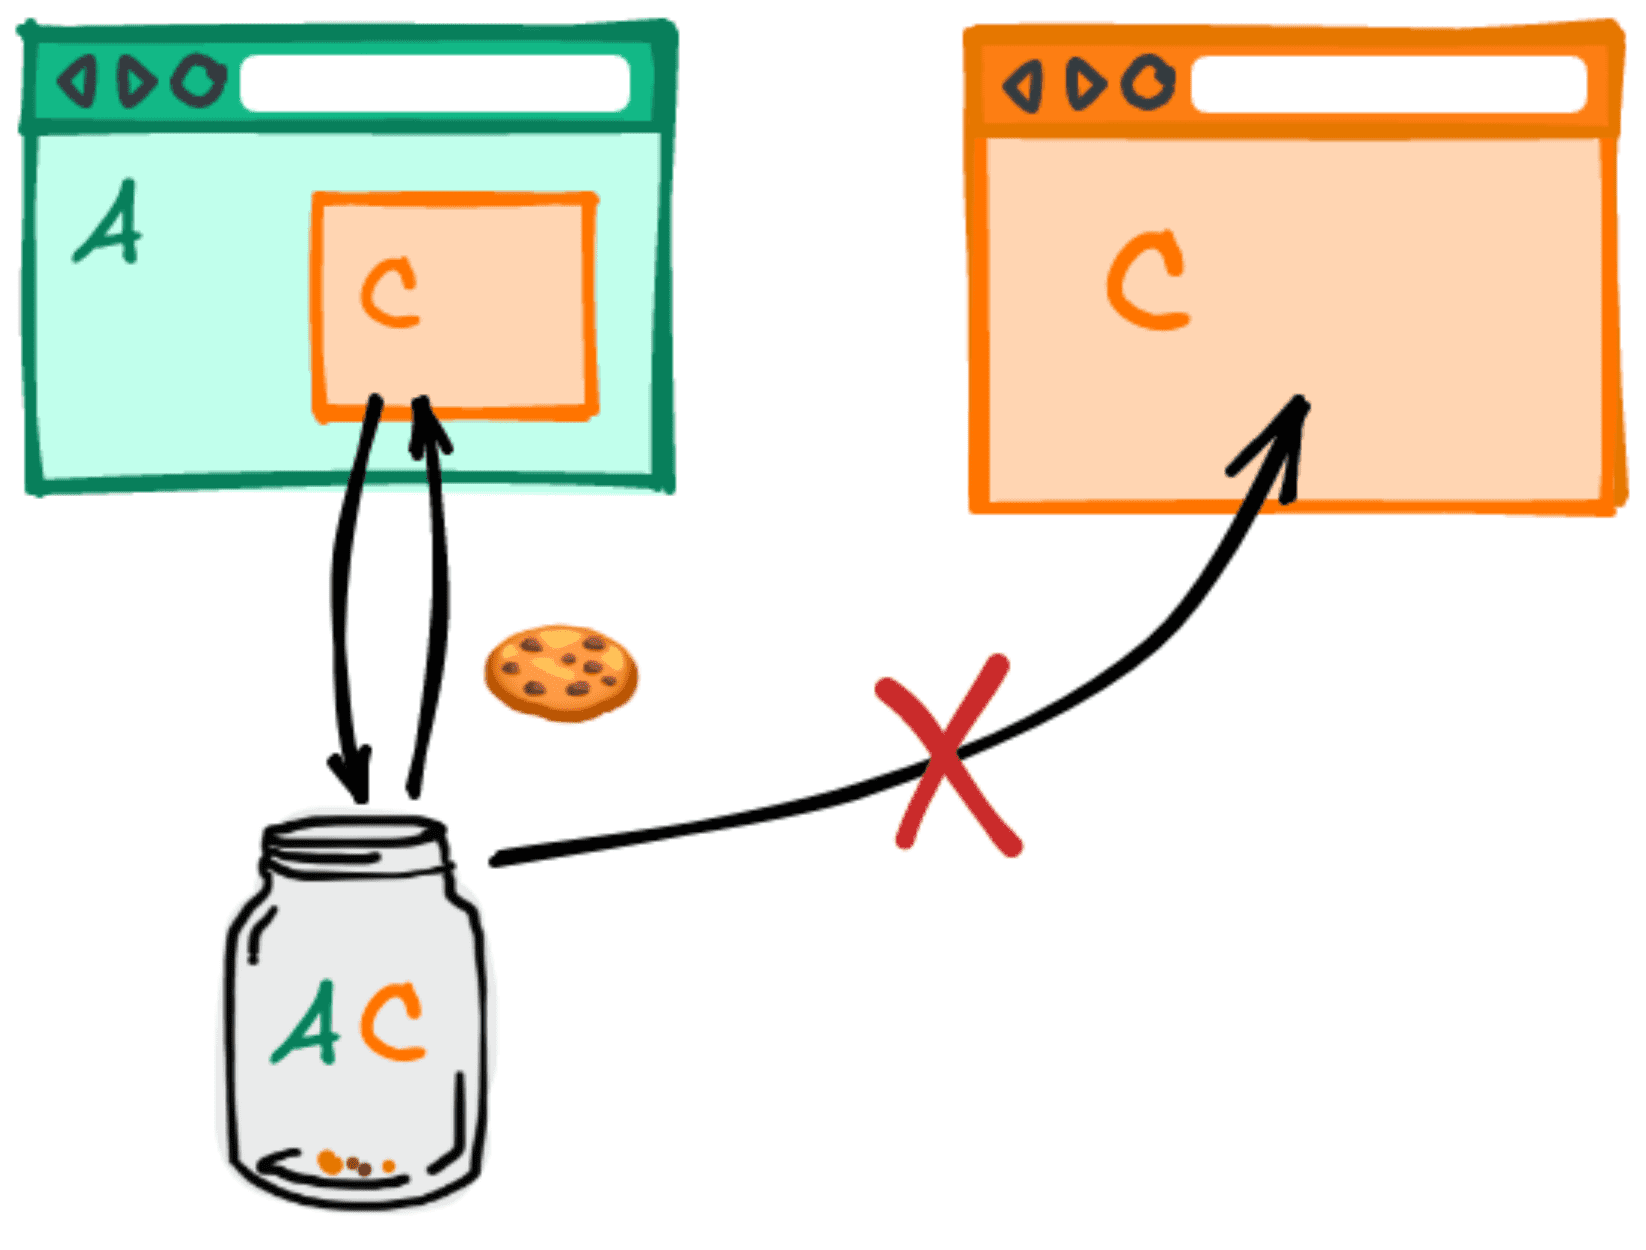 동일한 서드 파티가 두 개의 서로 다른 웹사이트에 삽입된 경우 쿠키가 공유되지 않음을 보여주는 다이어그램